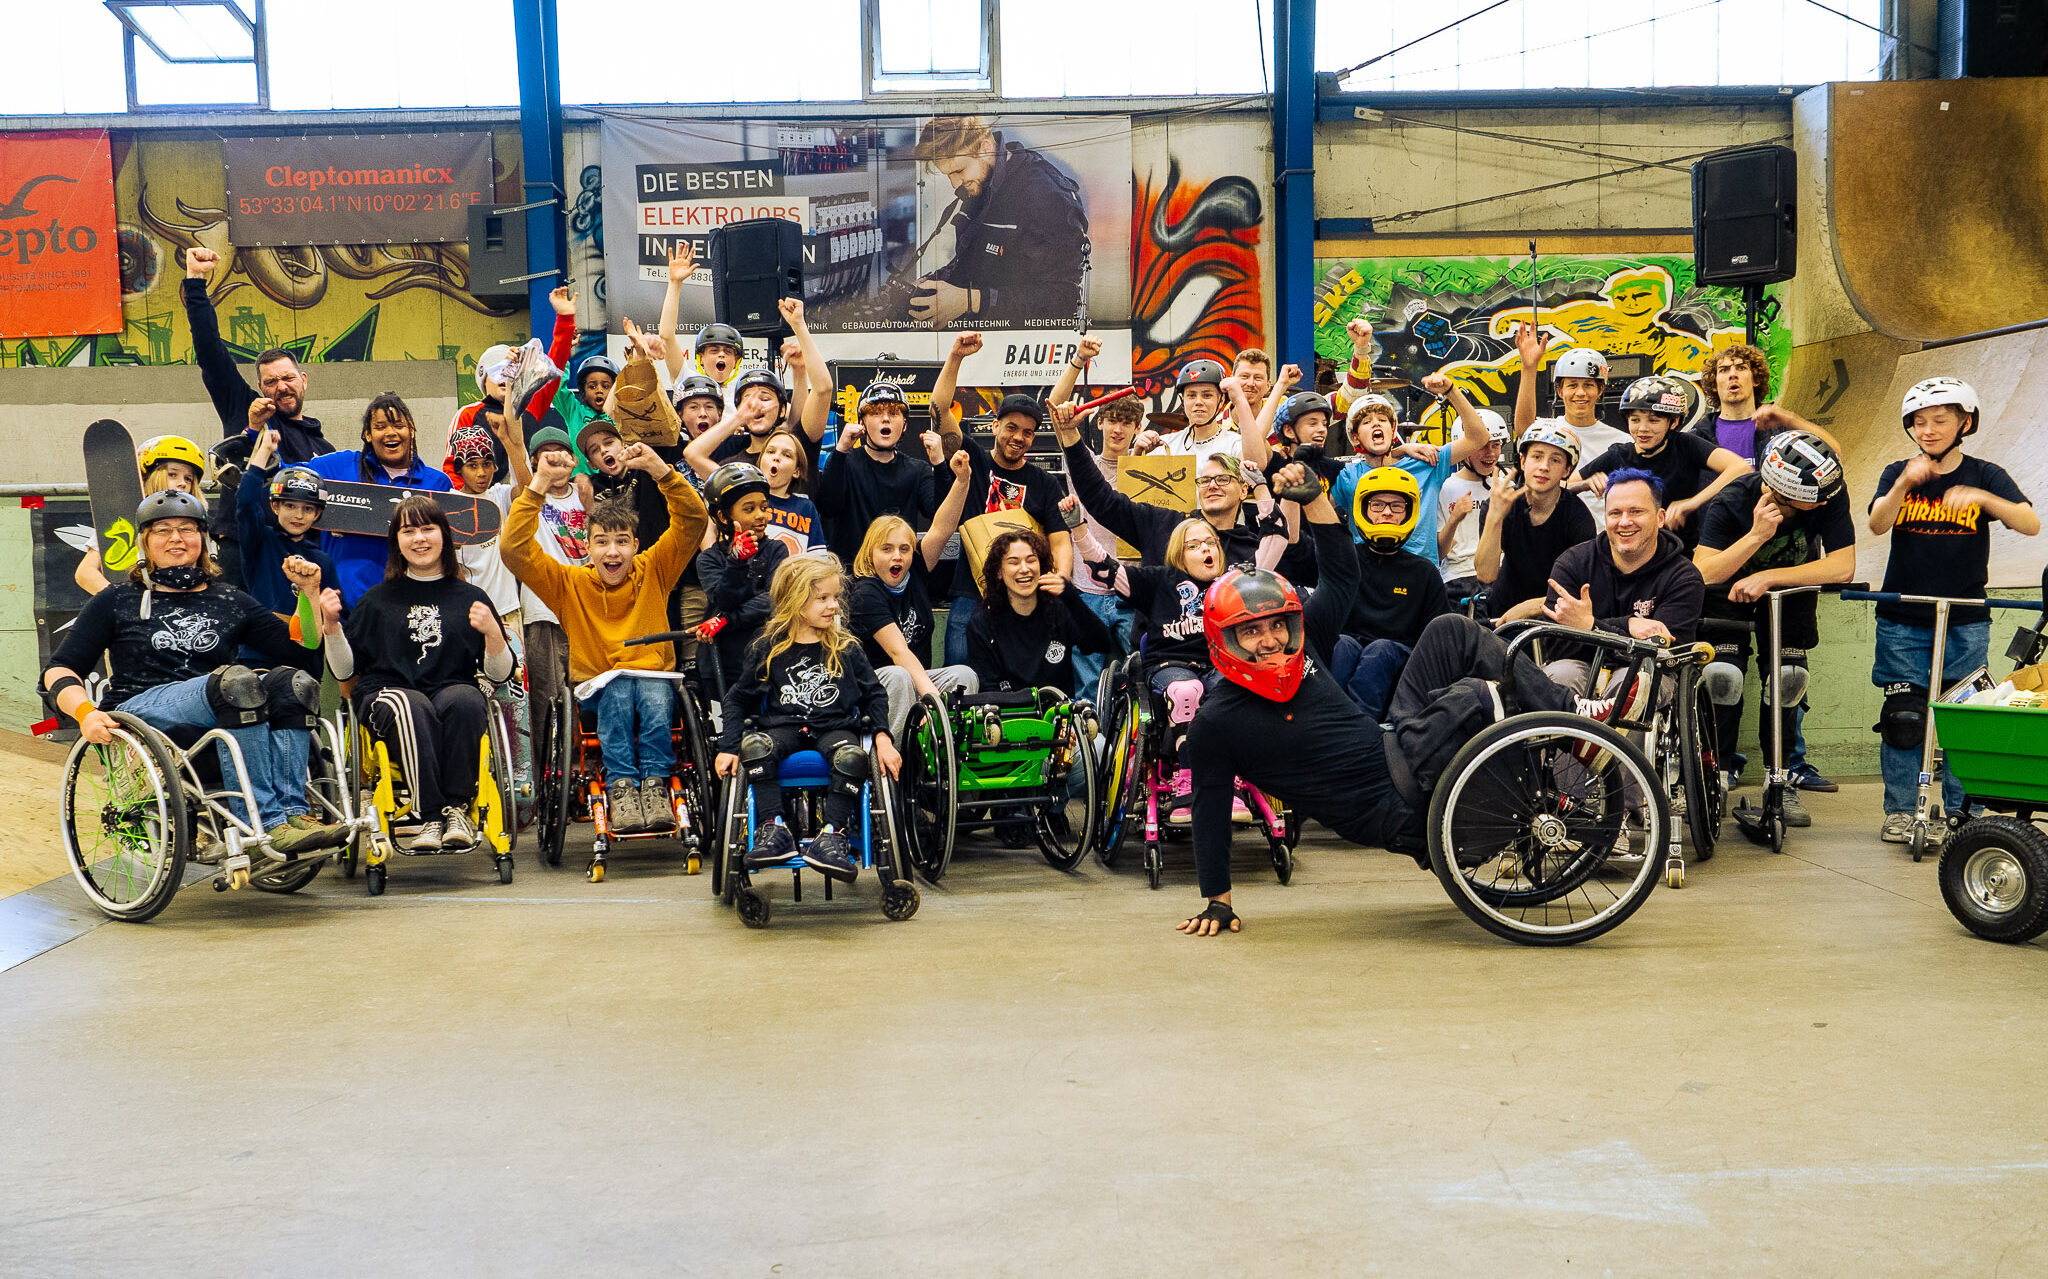 Gruppenbild in einer Skatehalle mit vielen Kindern, Jugendlichen und Erwachsenen in Rollstühlen, Scootern und Skateboards.